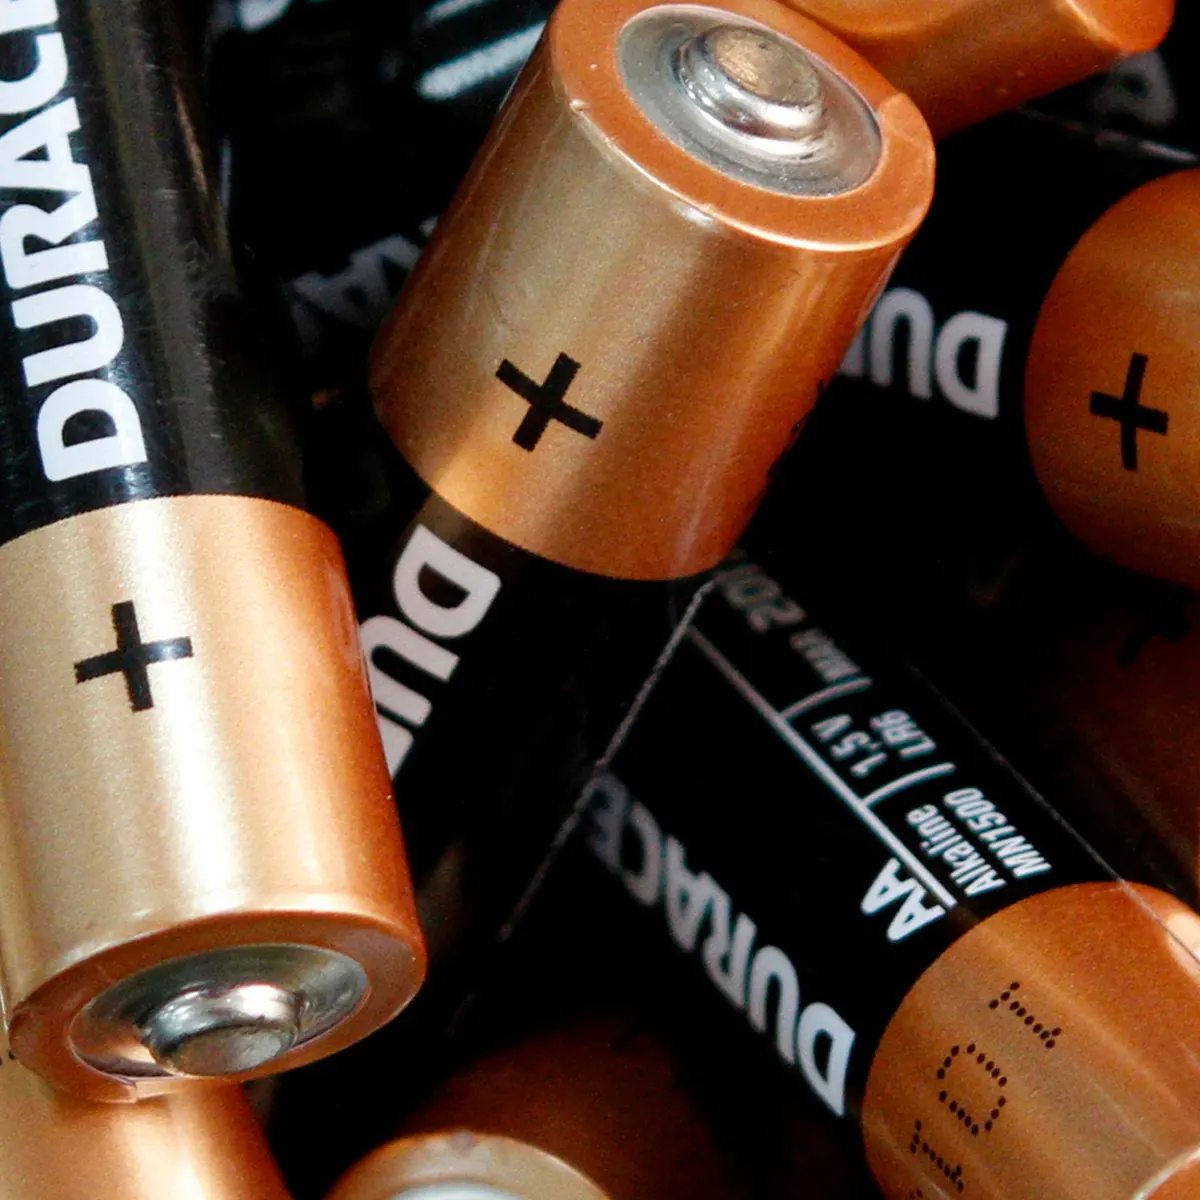 Alkaline AA batteries